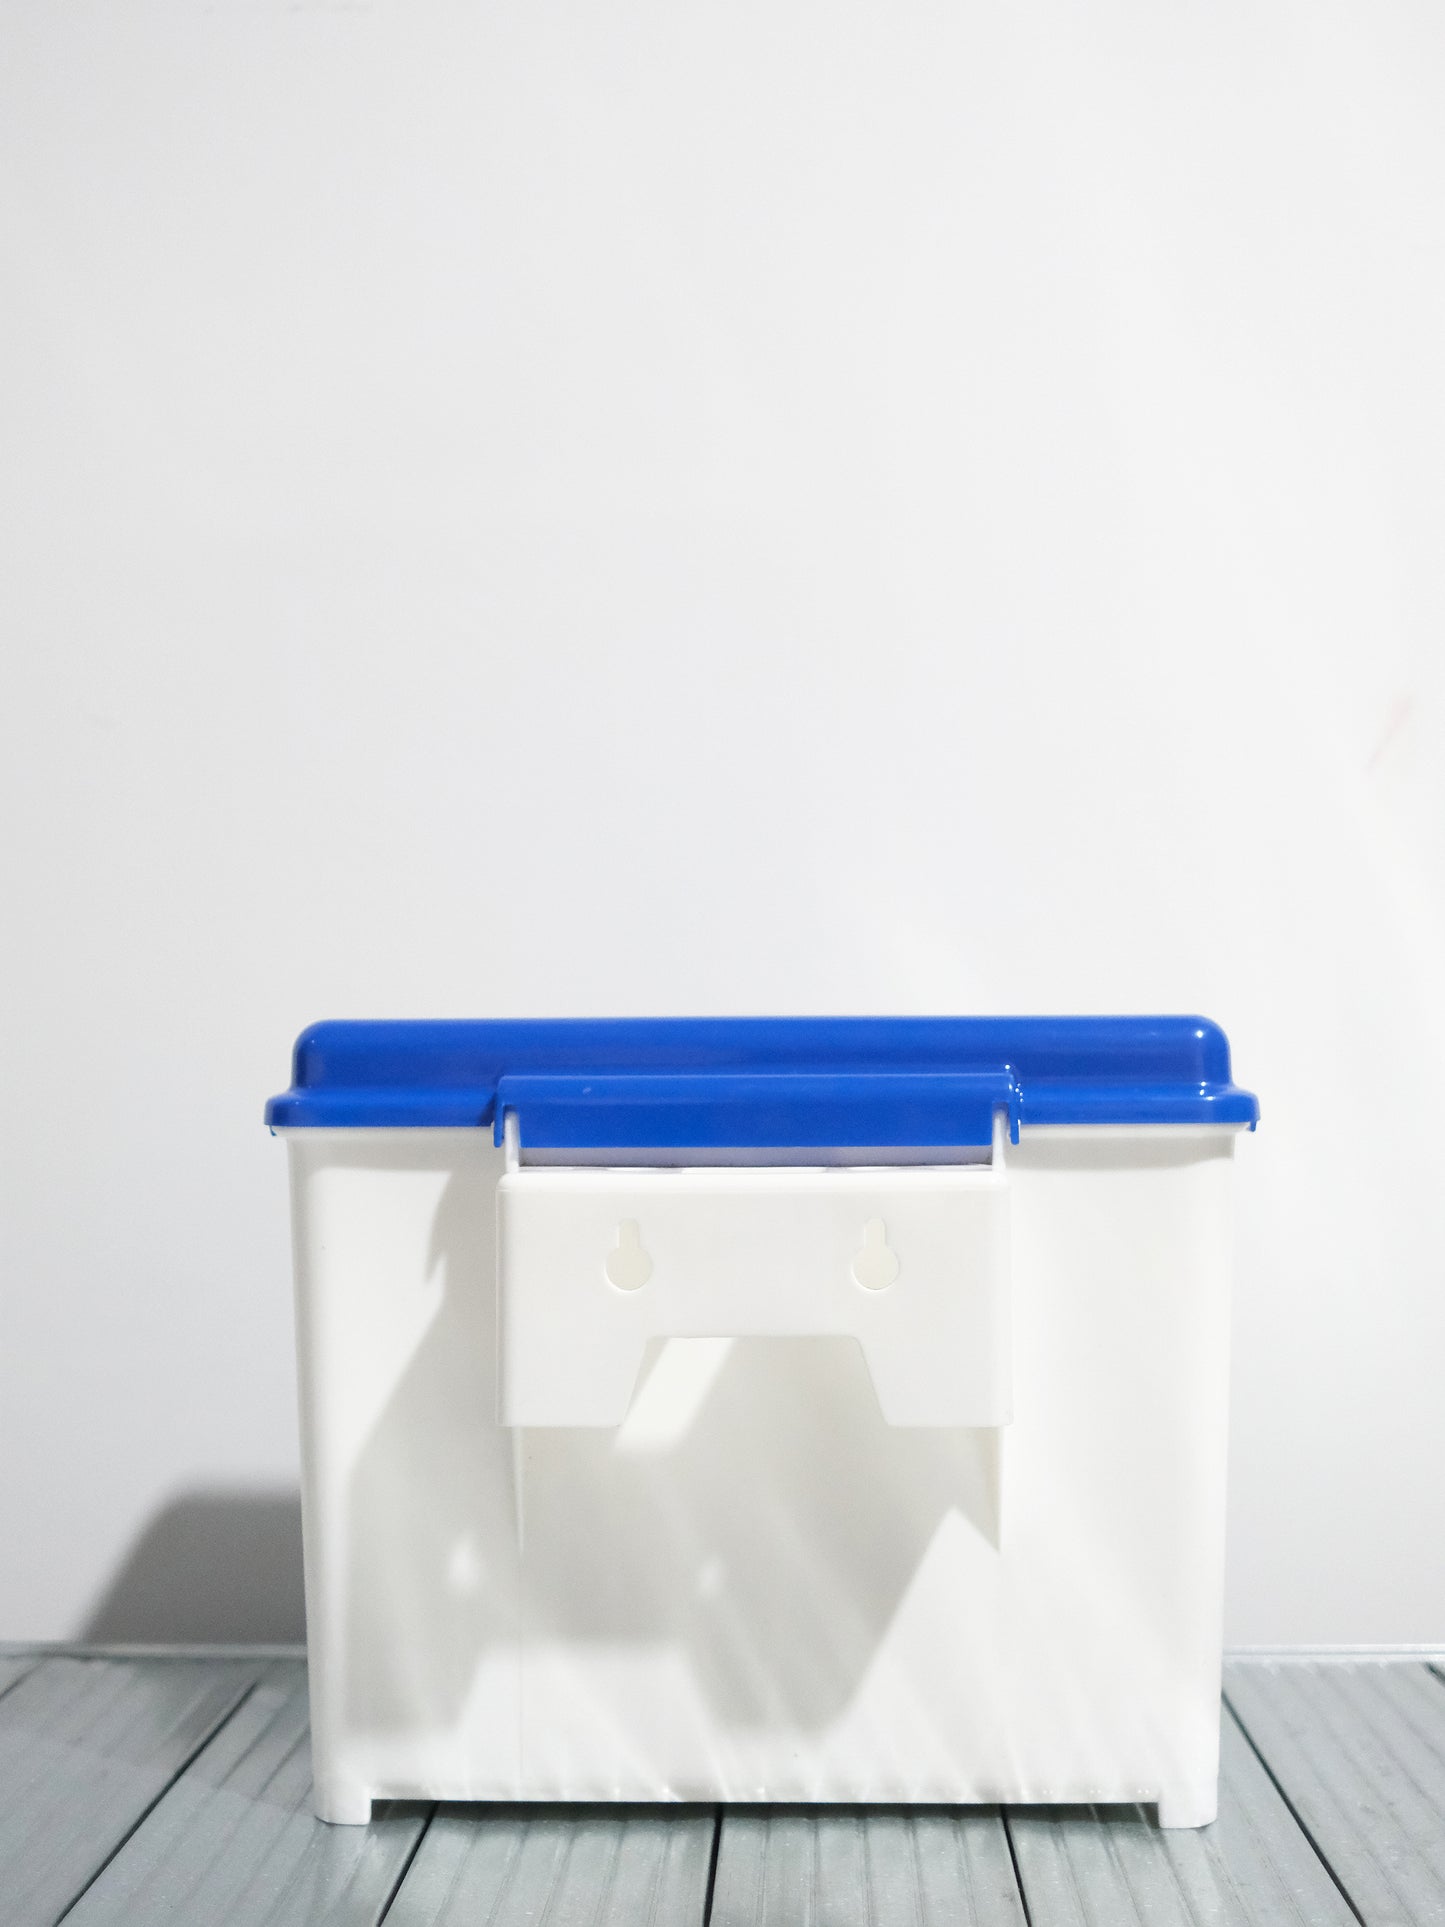 日本 Meiji 明治牛乳 塑膠製 保冷 牛奶箱 宅配箱 Milk Box